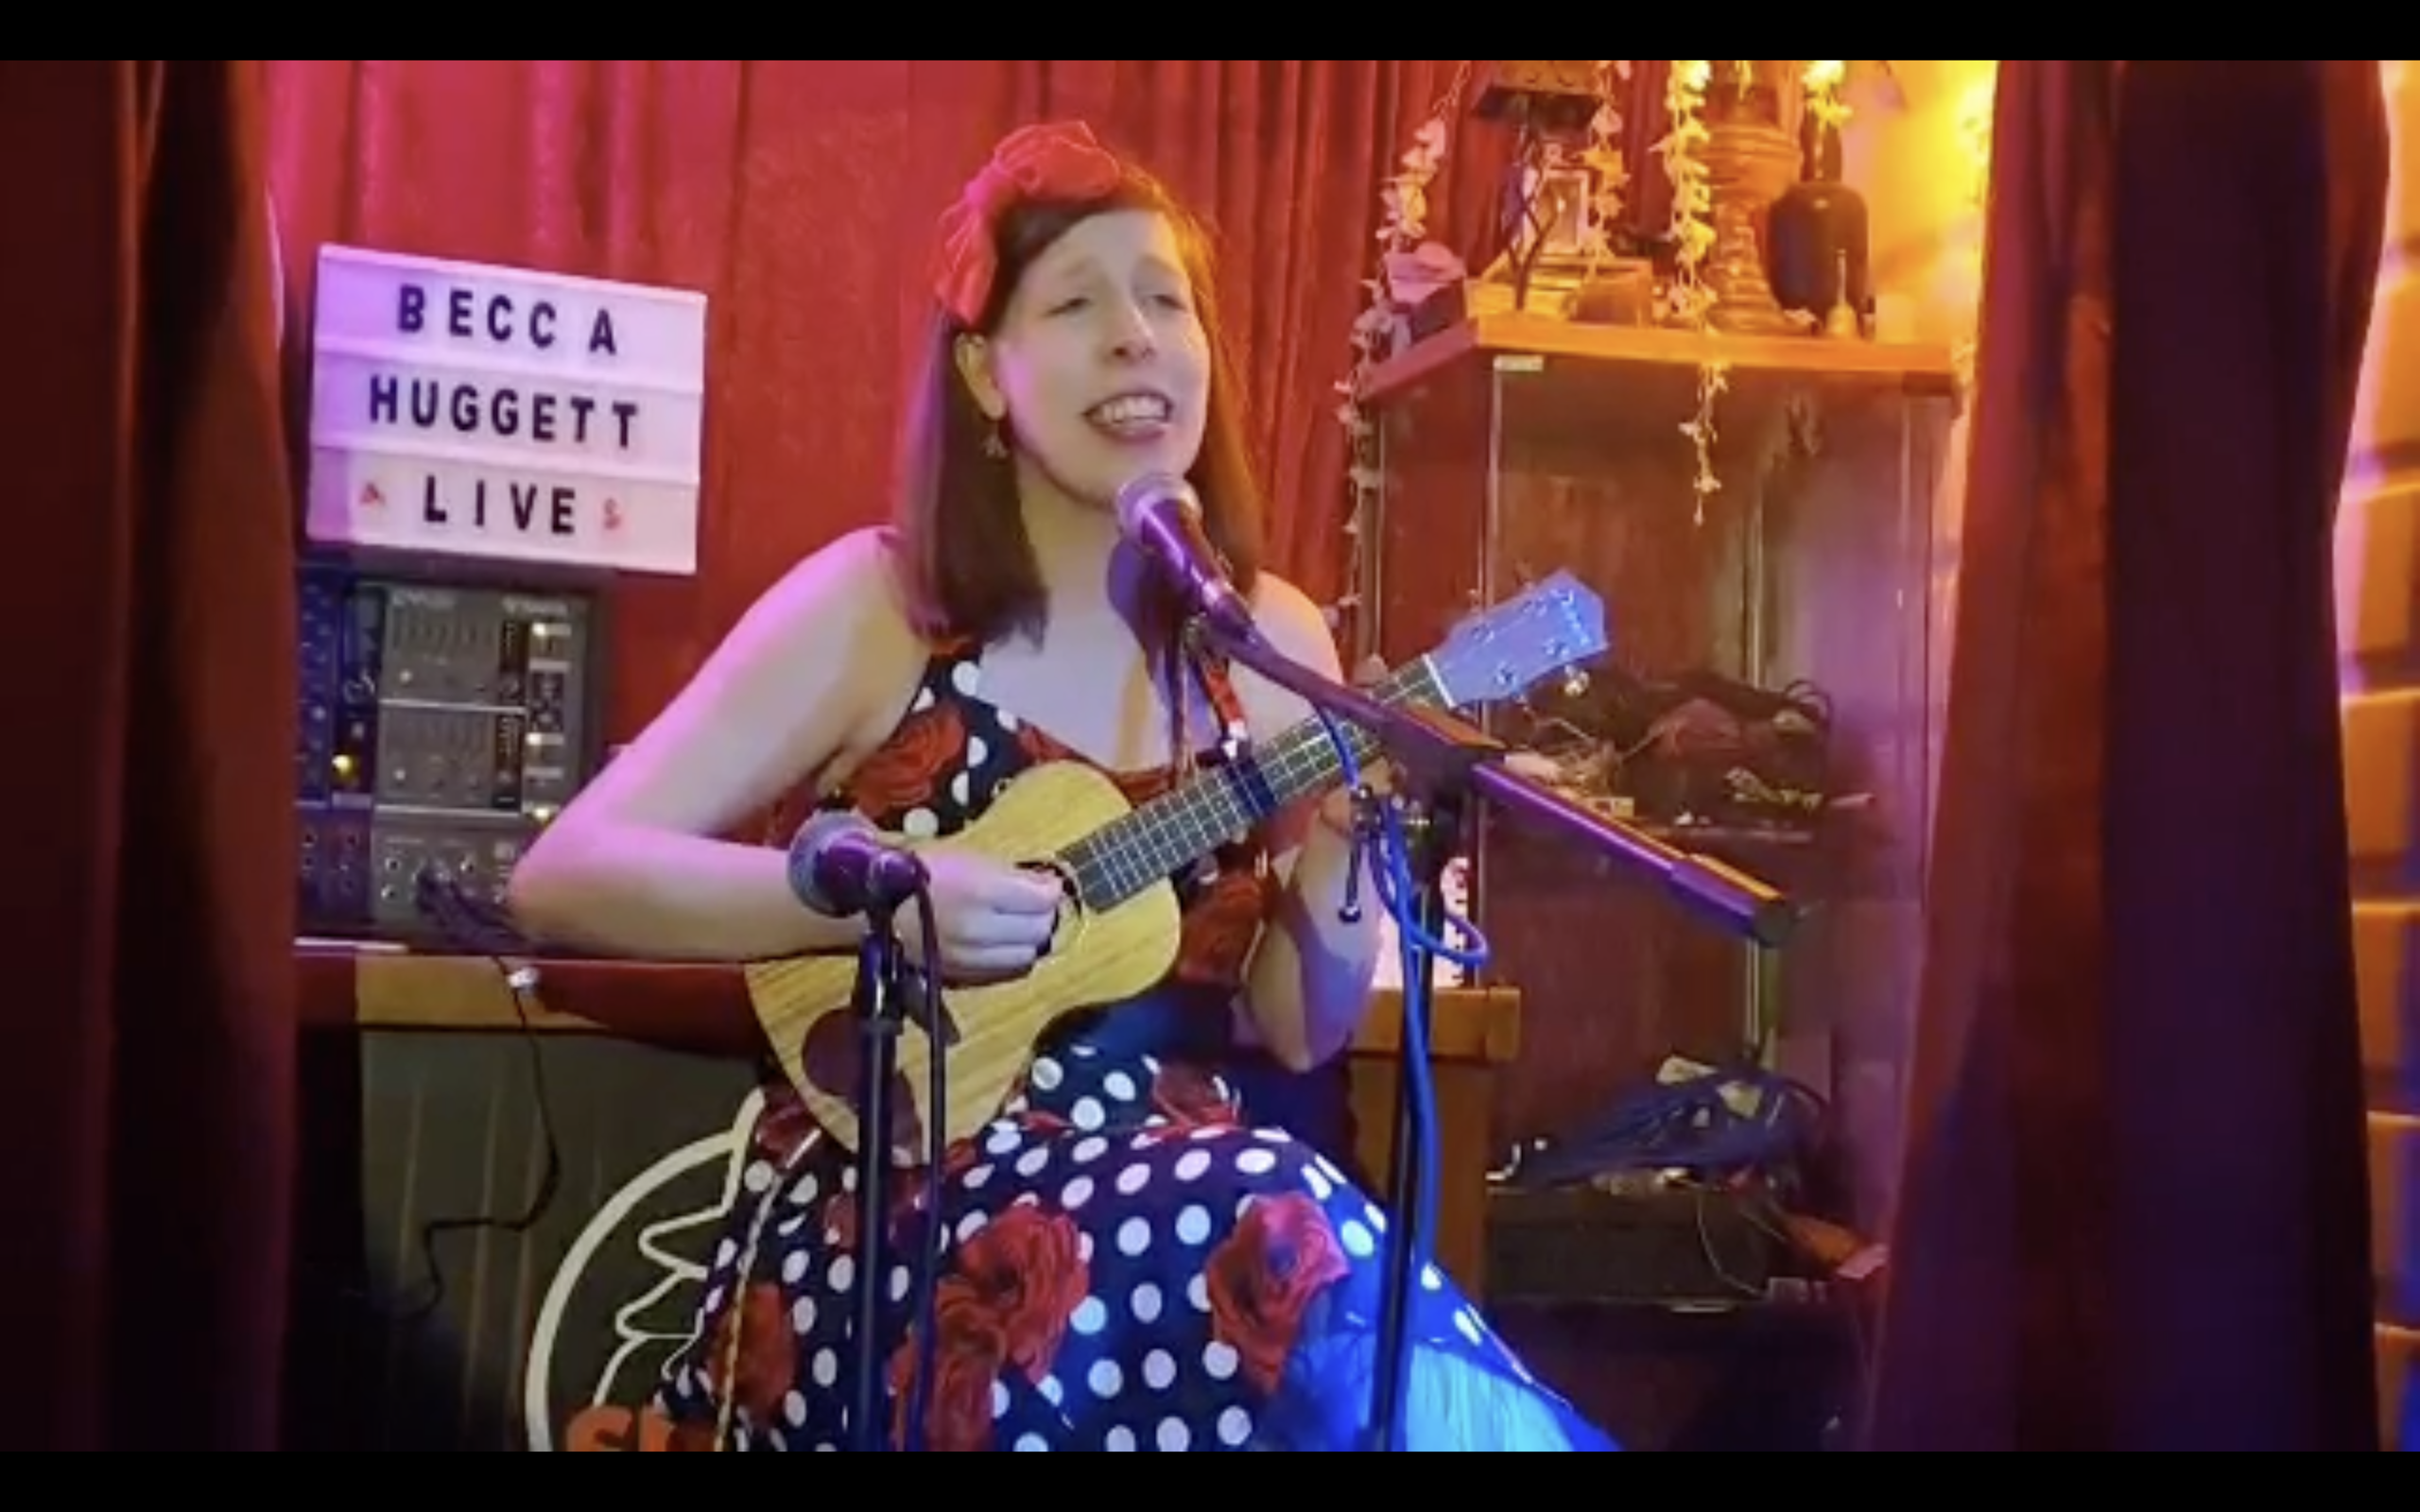 Becca Huggett singing original songs on ukulele :D